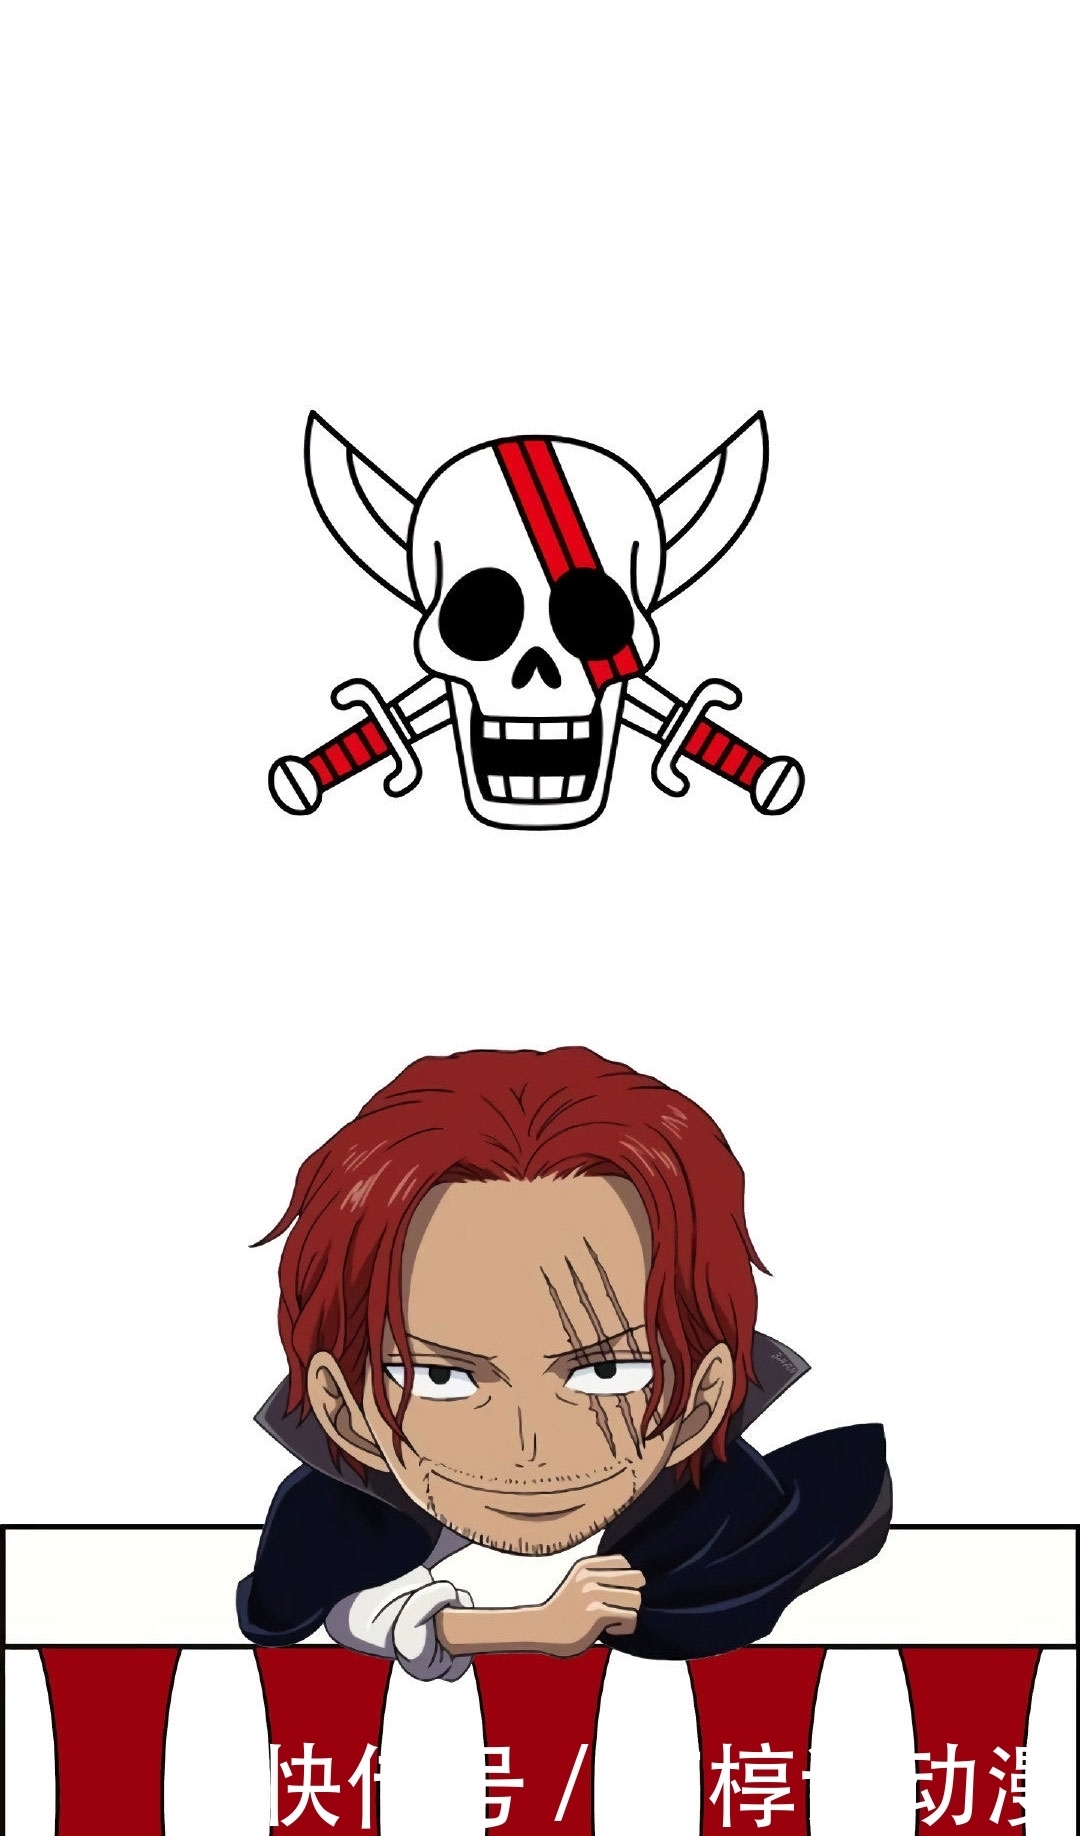 动漫壁纸:海贼王红发香克斯手机壁纸,霸气侧漏的男人